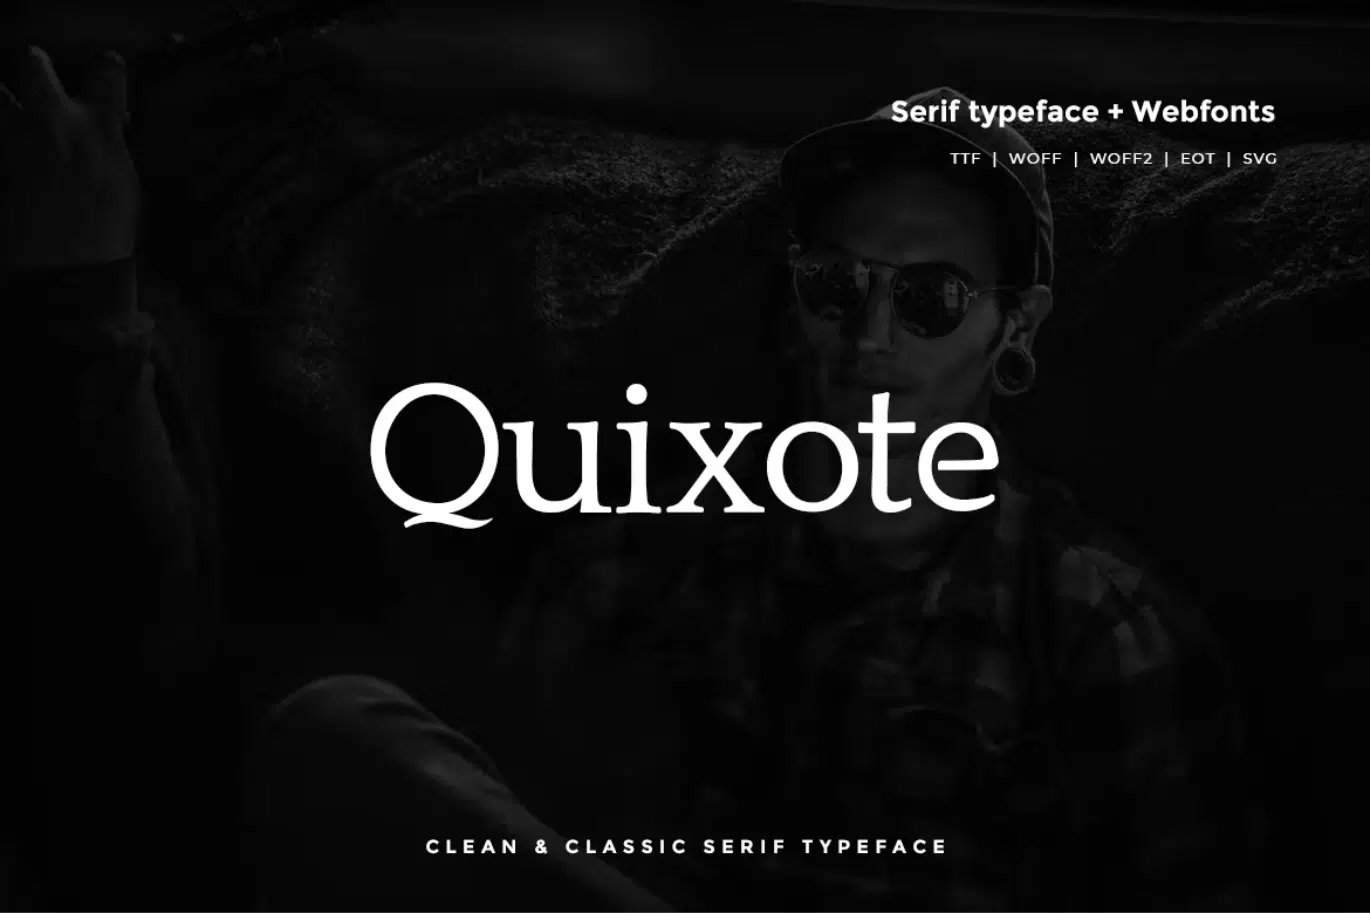 Quixote Font Similar To Garamond